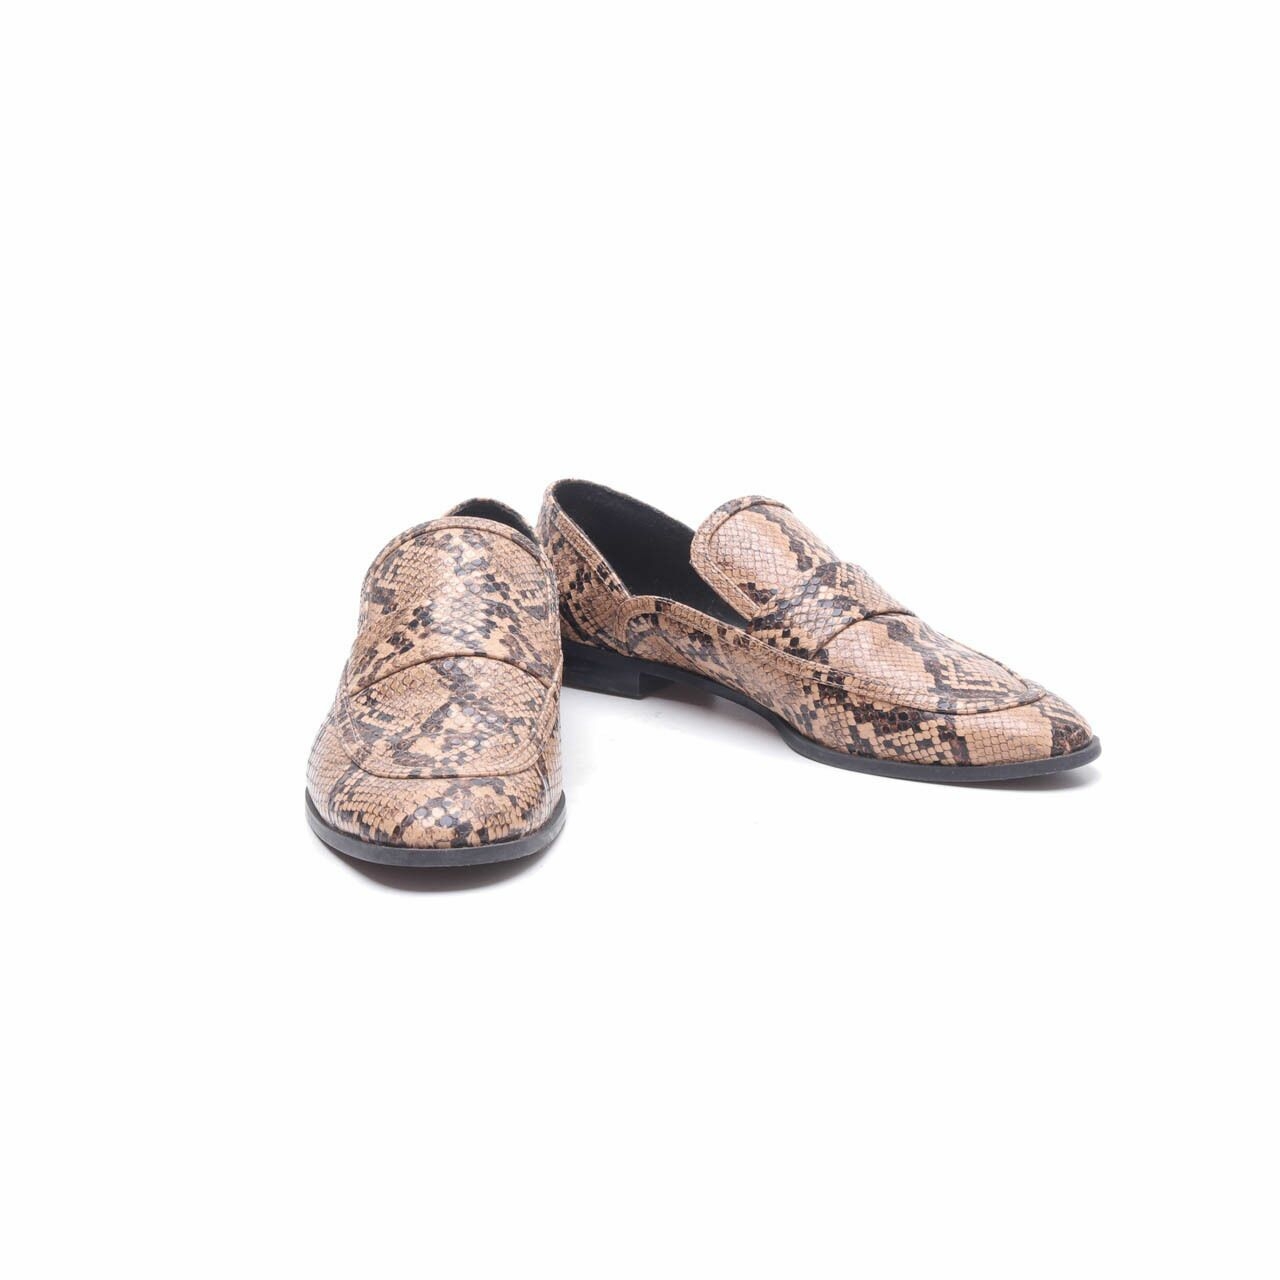 Zara Multi Snakeskin Loafers